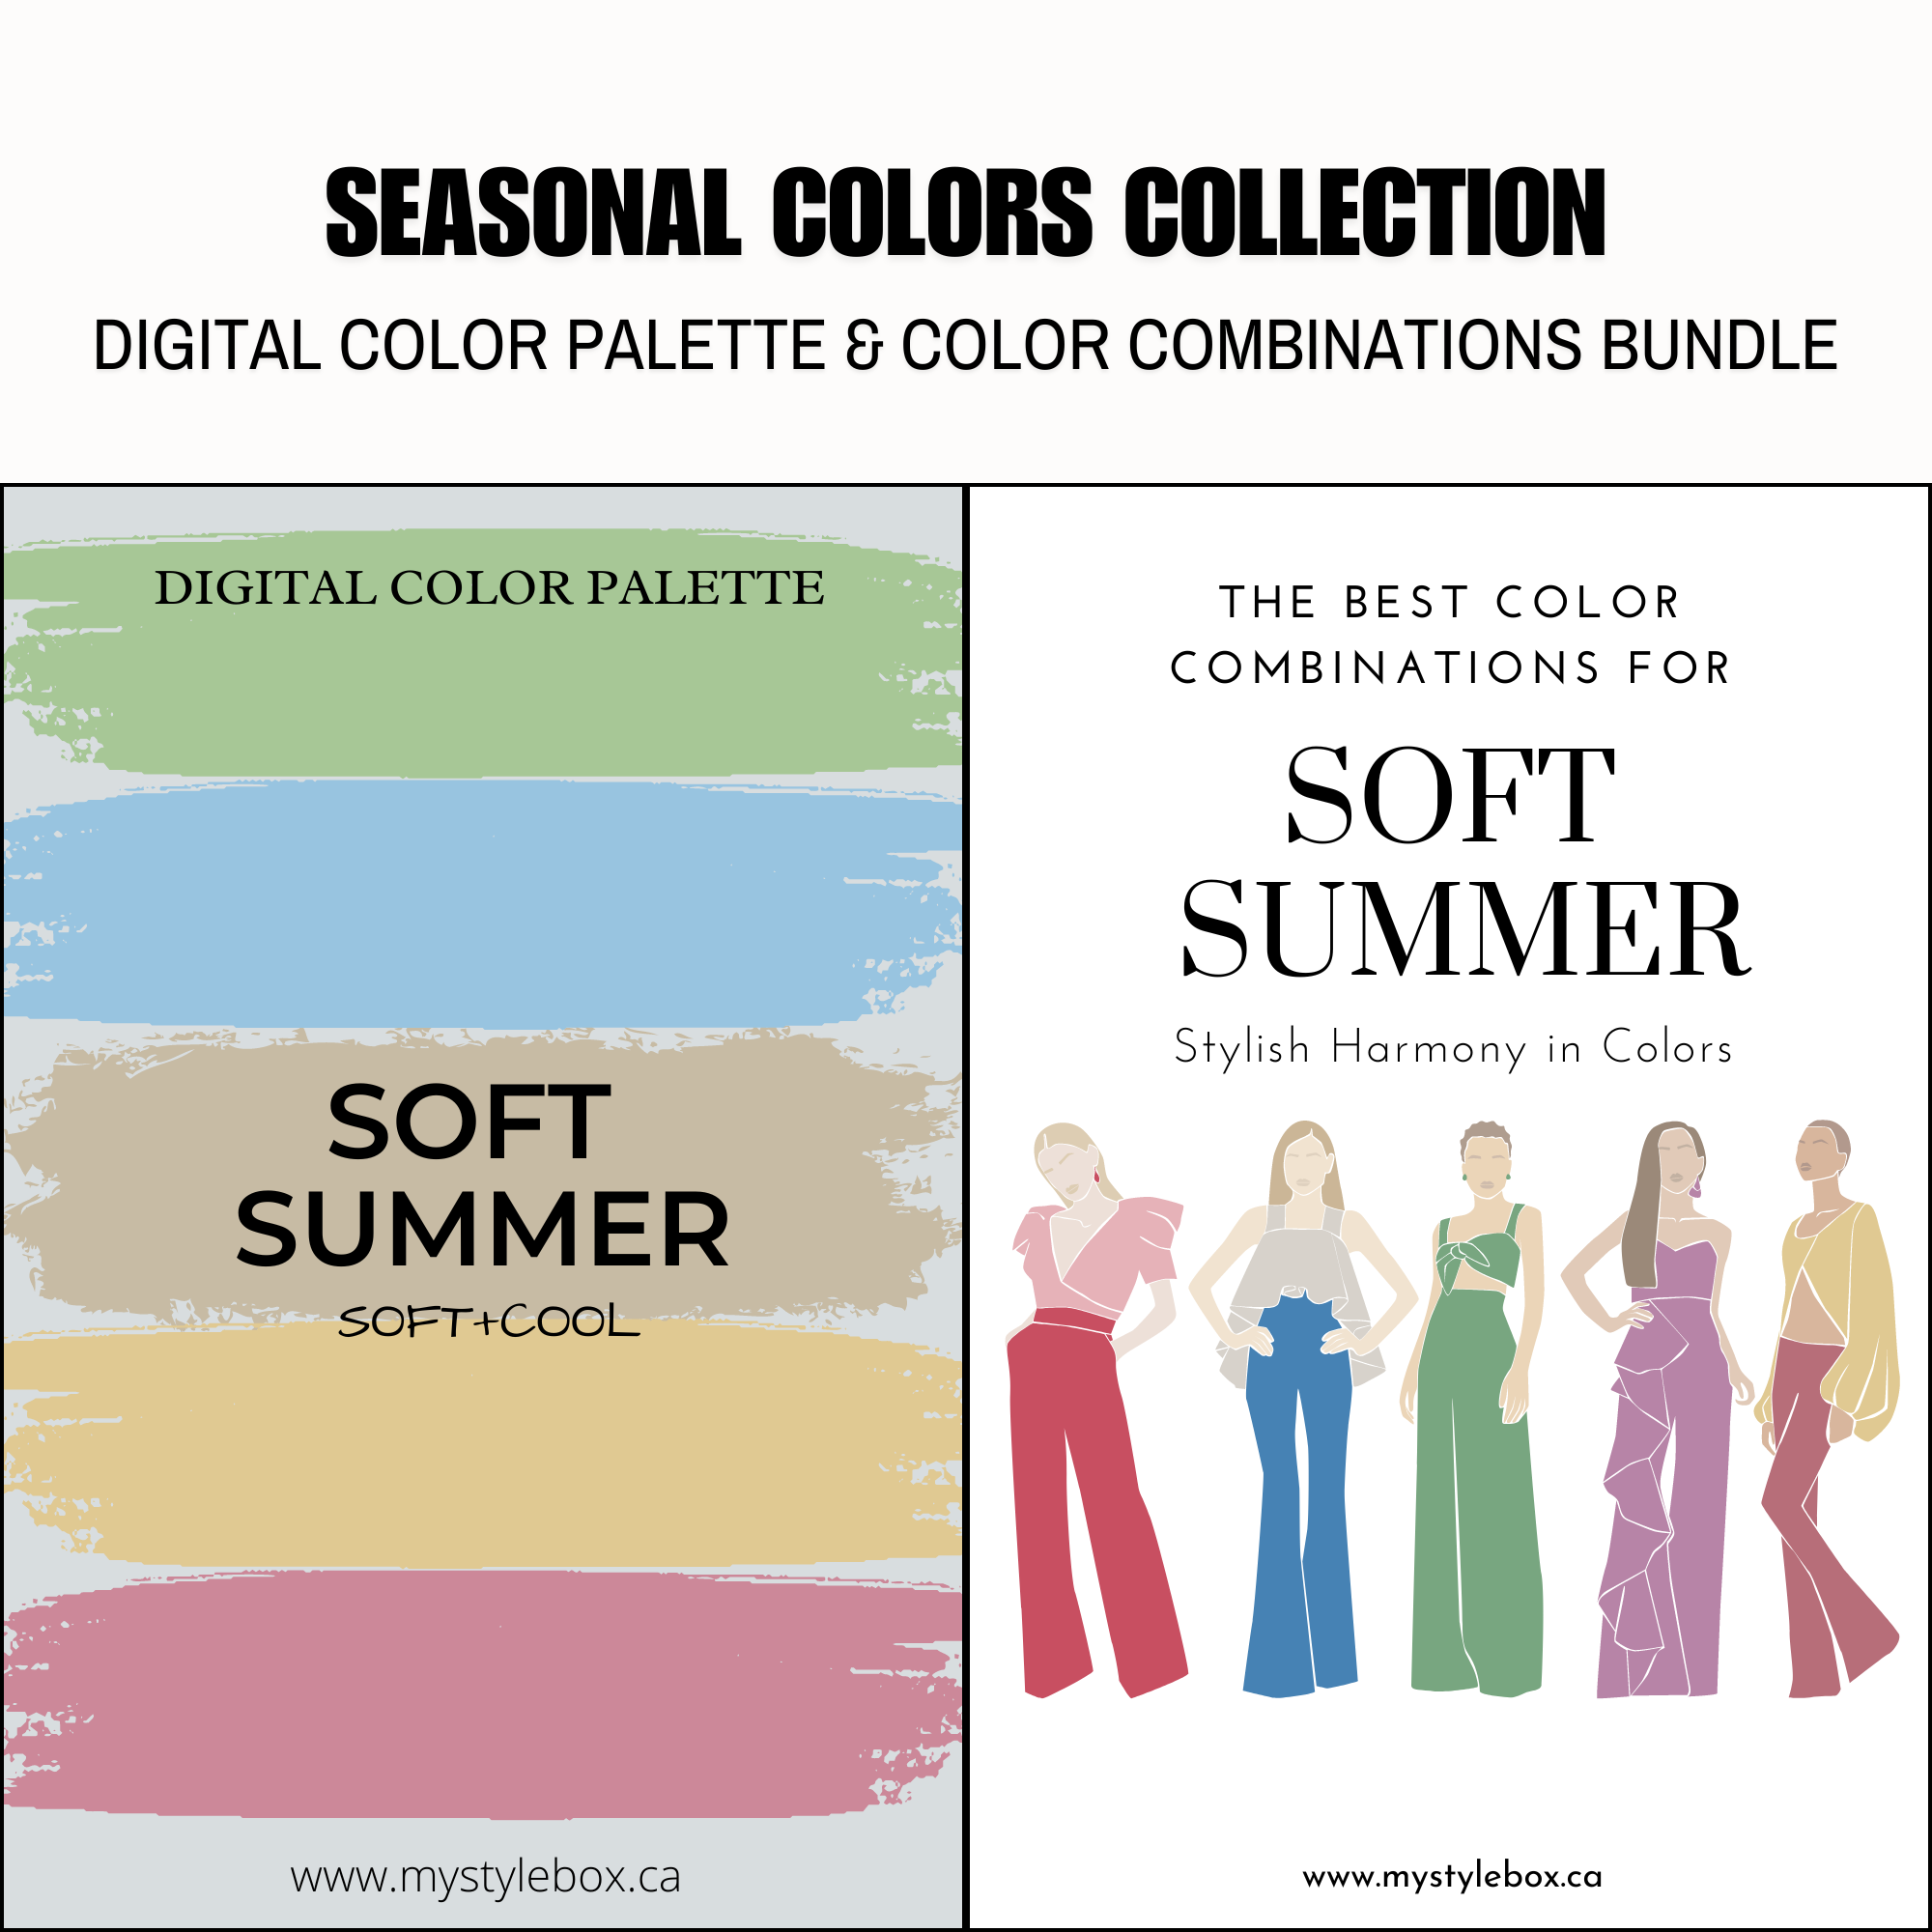 Paquete de paleta de colores digitales y combinaciones de colores suaves de la temporada de verano